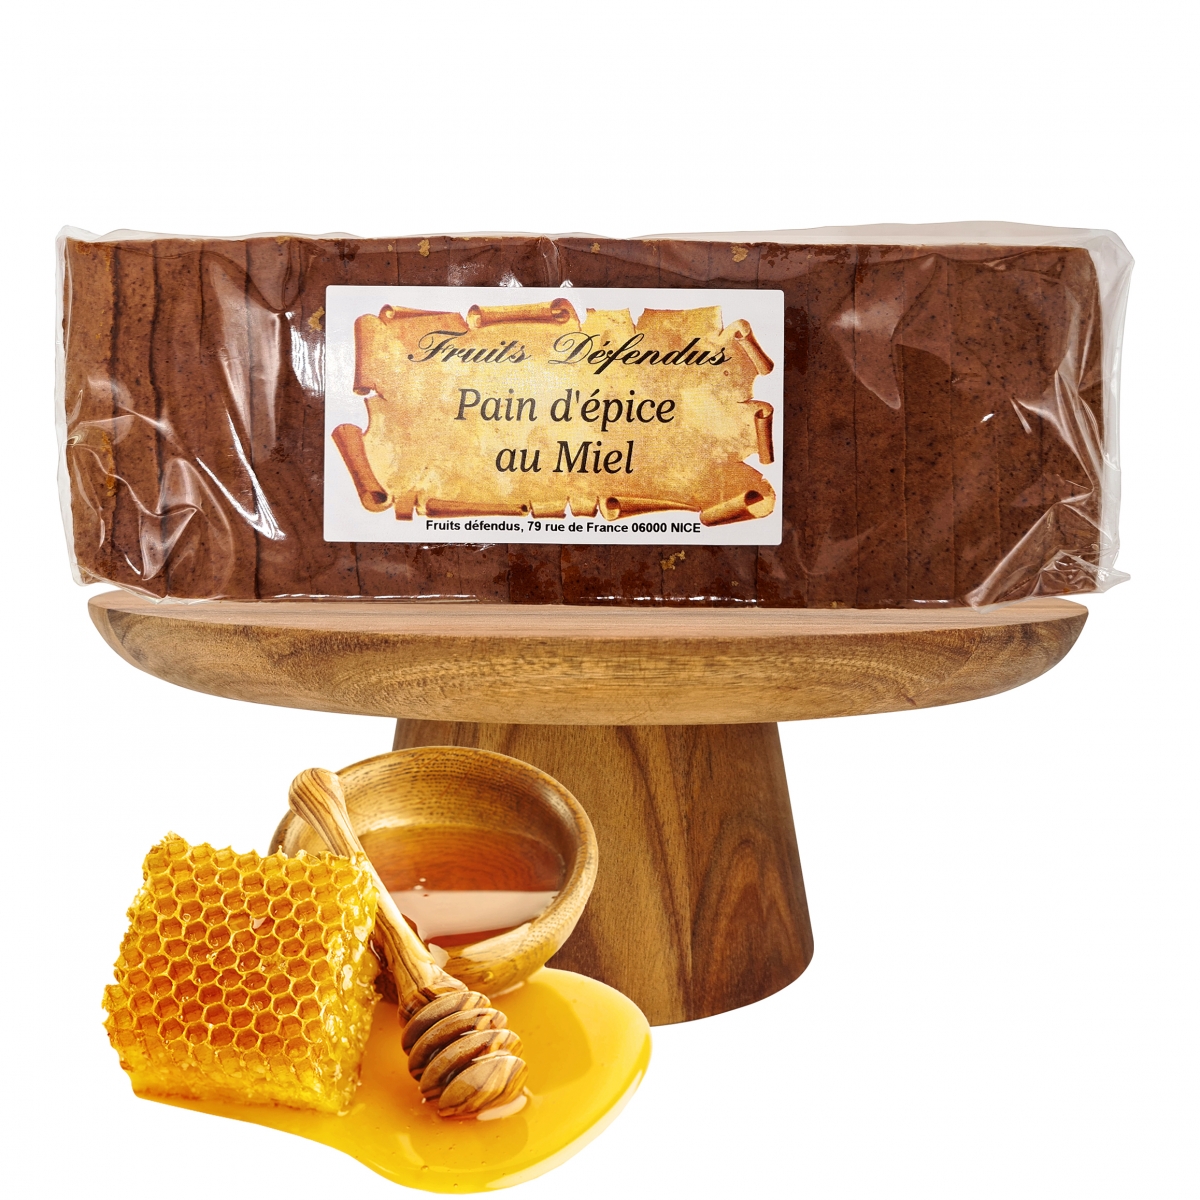 Pain d'épices nature avec 50% de miel